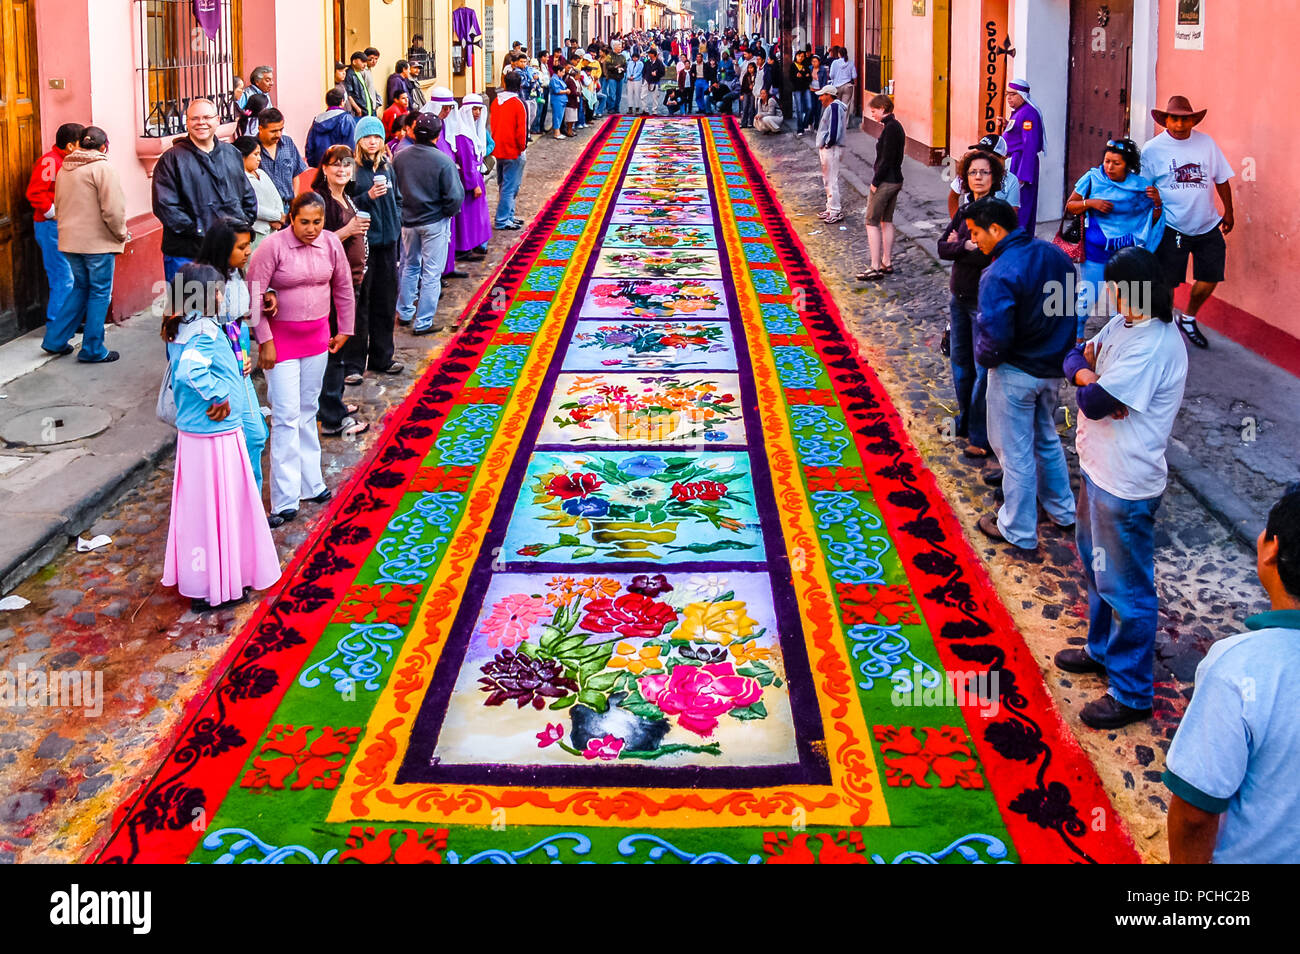 Antigua, Guatemala - April 10, 2009: Karfreitagsprozession Teppich in der kolonialen Stadt mit dem berühmtesten Feierlichkeiten zur Karwoche in Lateinamerika. Stockfoto